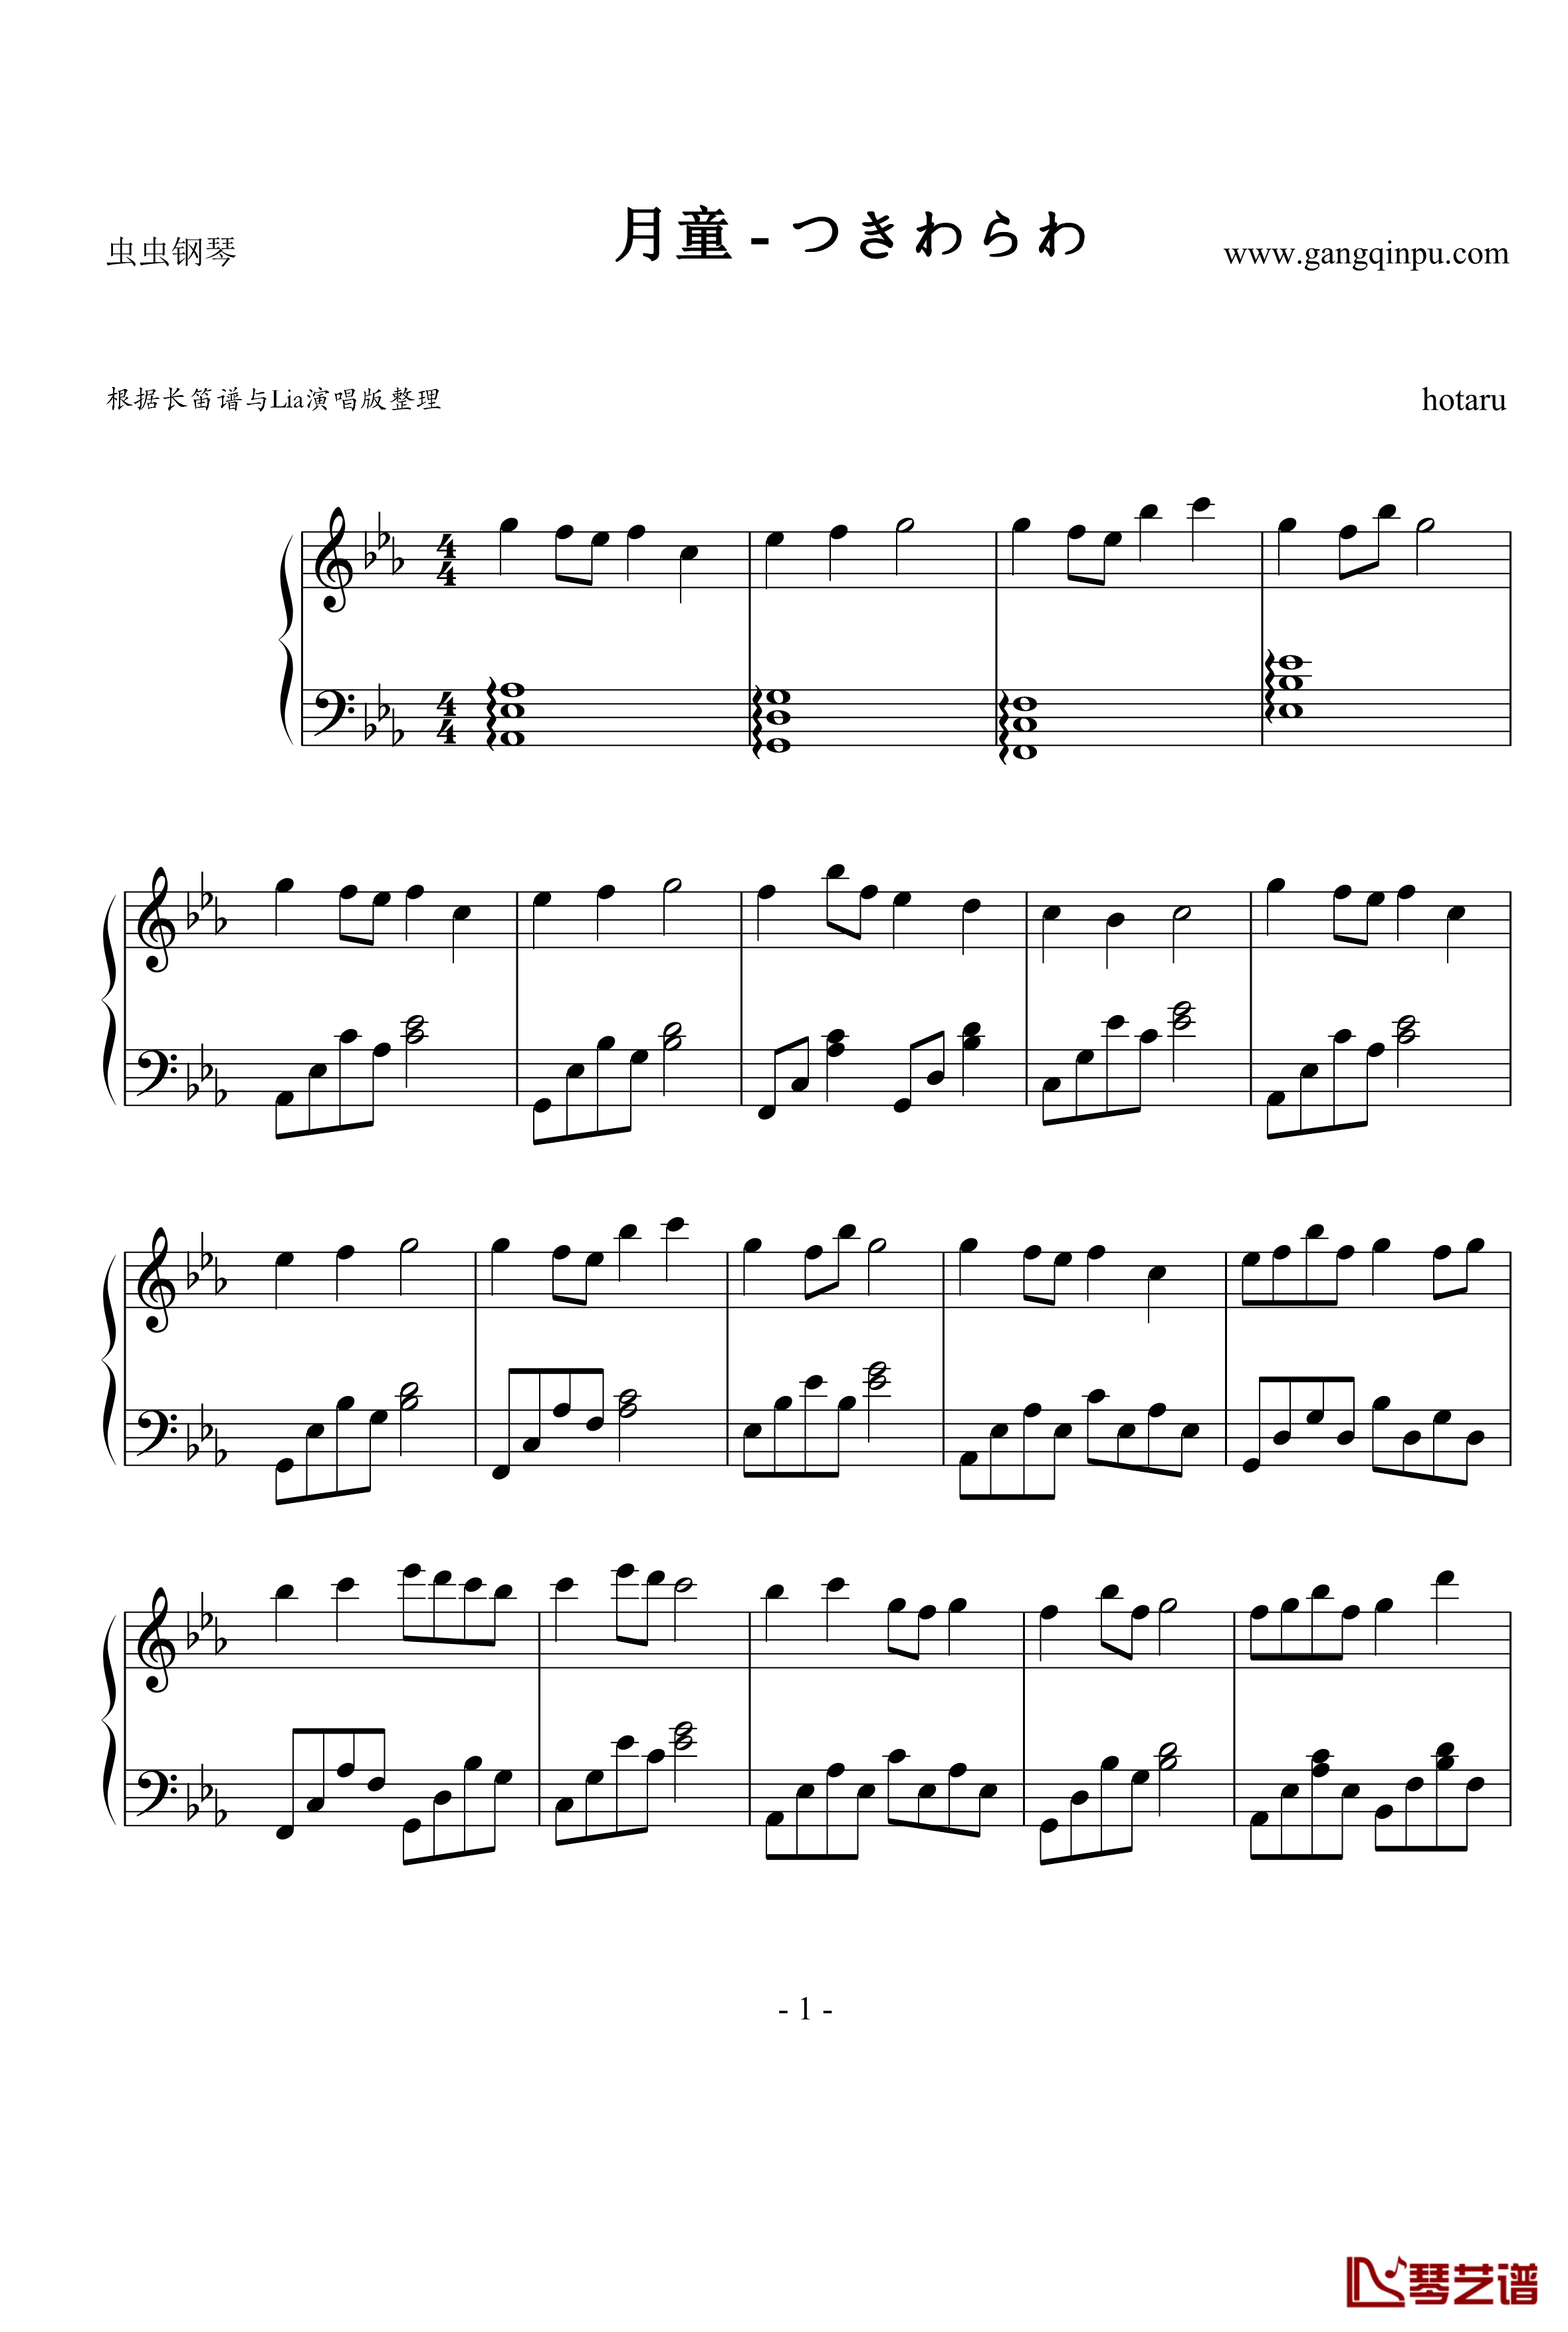 月童钢琴谱-Lia-神奈备命1